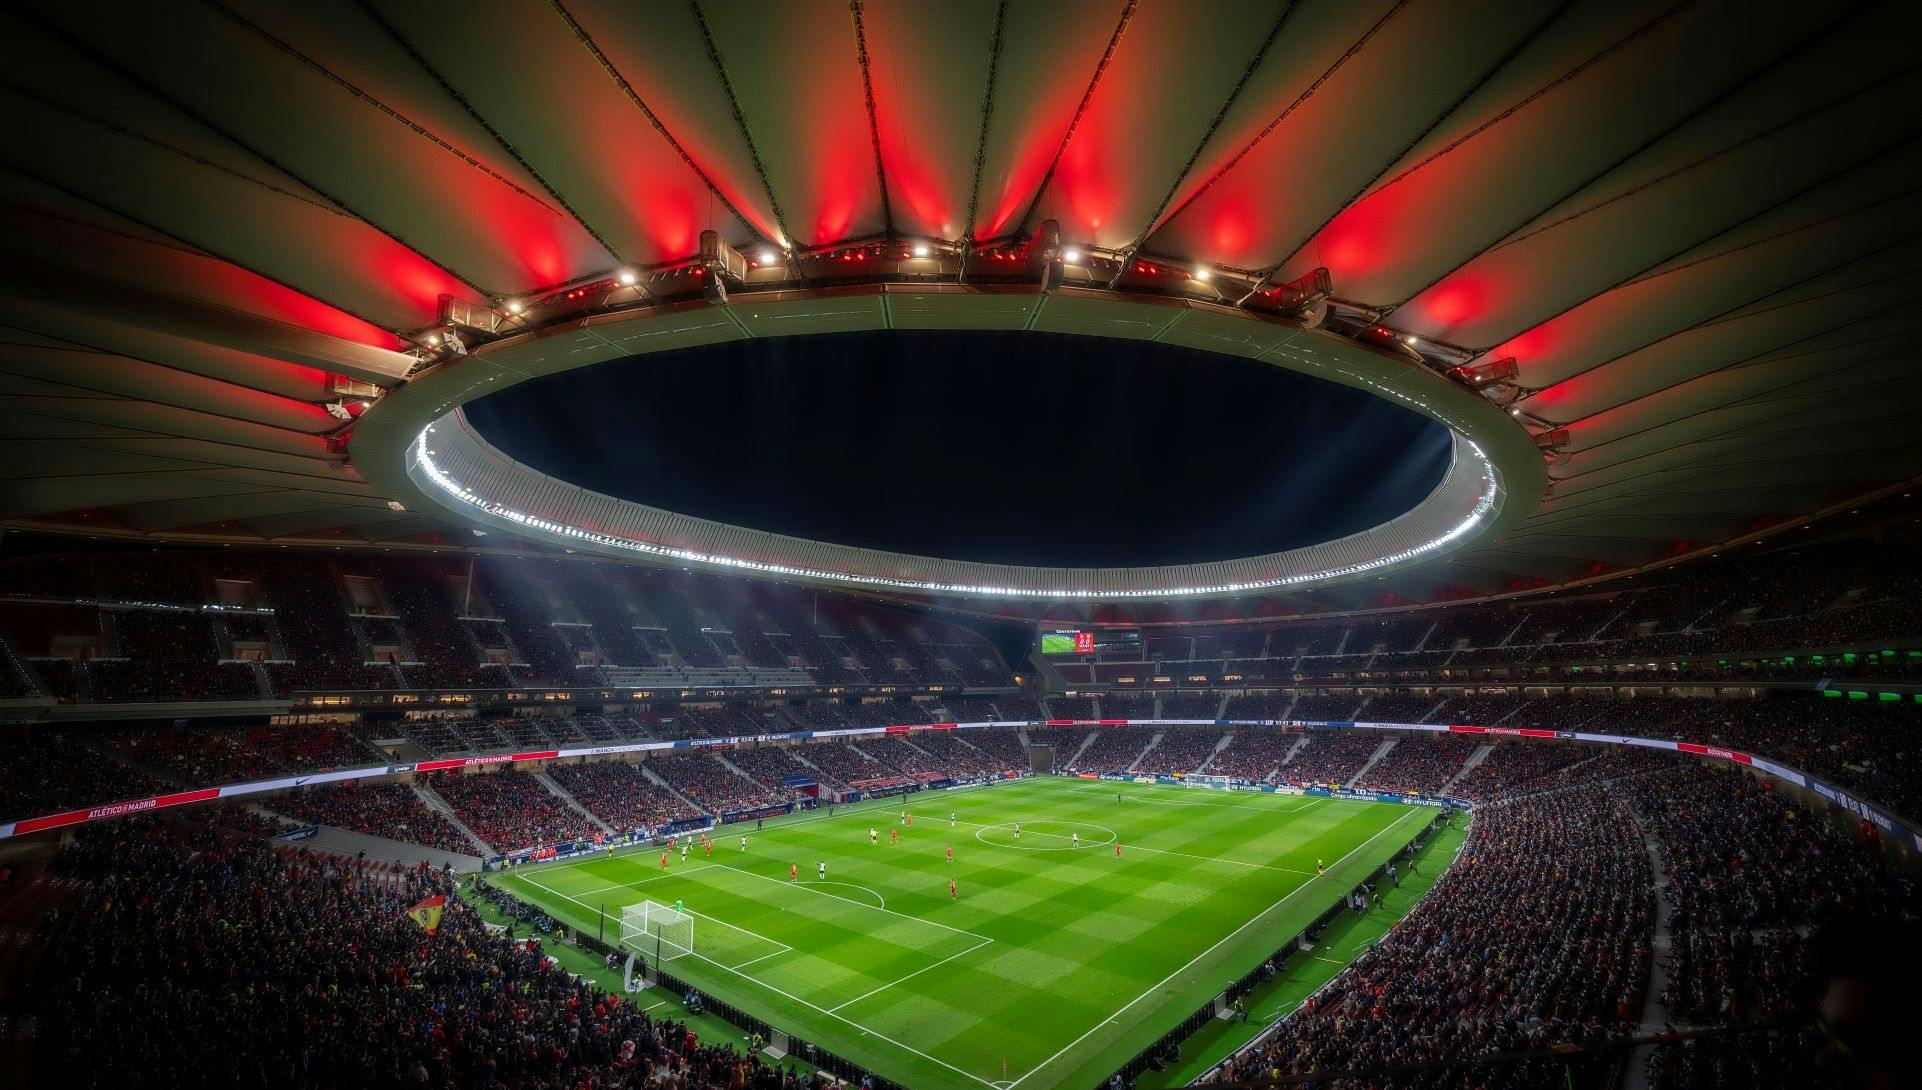 Ingressos para o museu do Atlético de Madrid e visita ao estádio